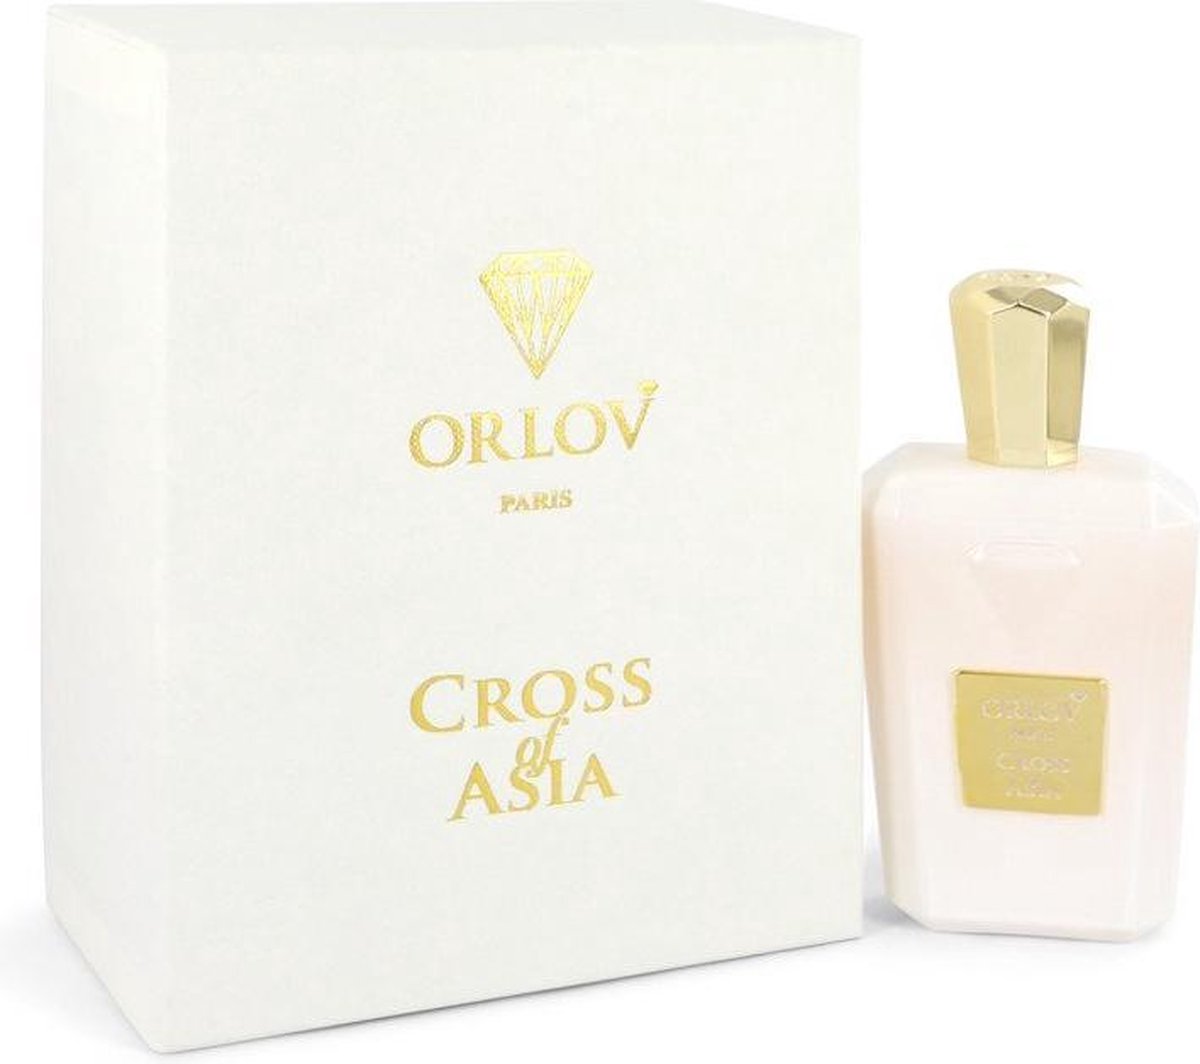 Cross of Asia by Orlov Paris 75 ml - Eau De Parfum Spray